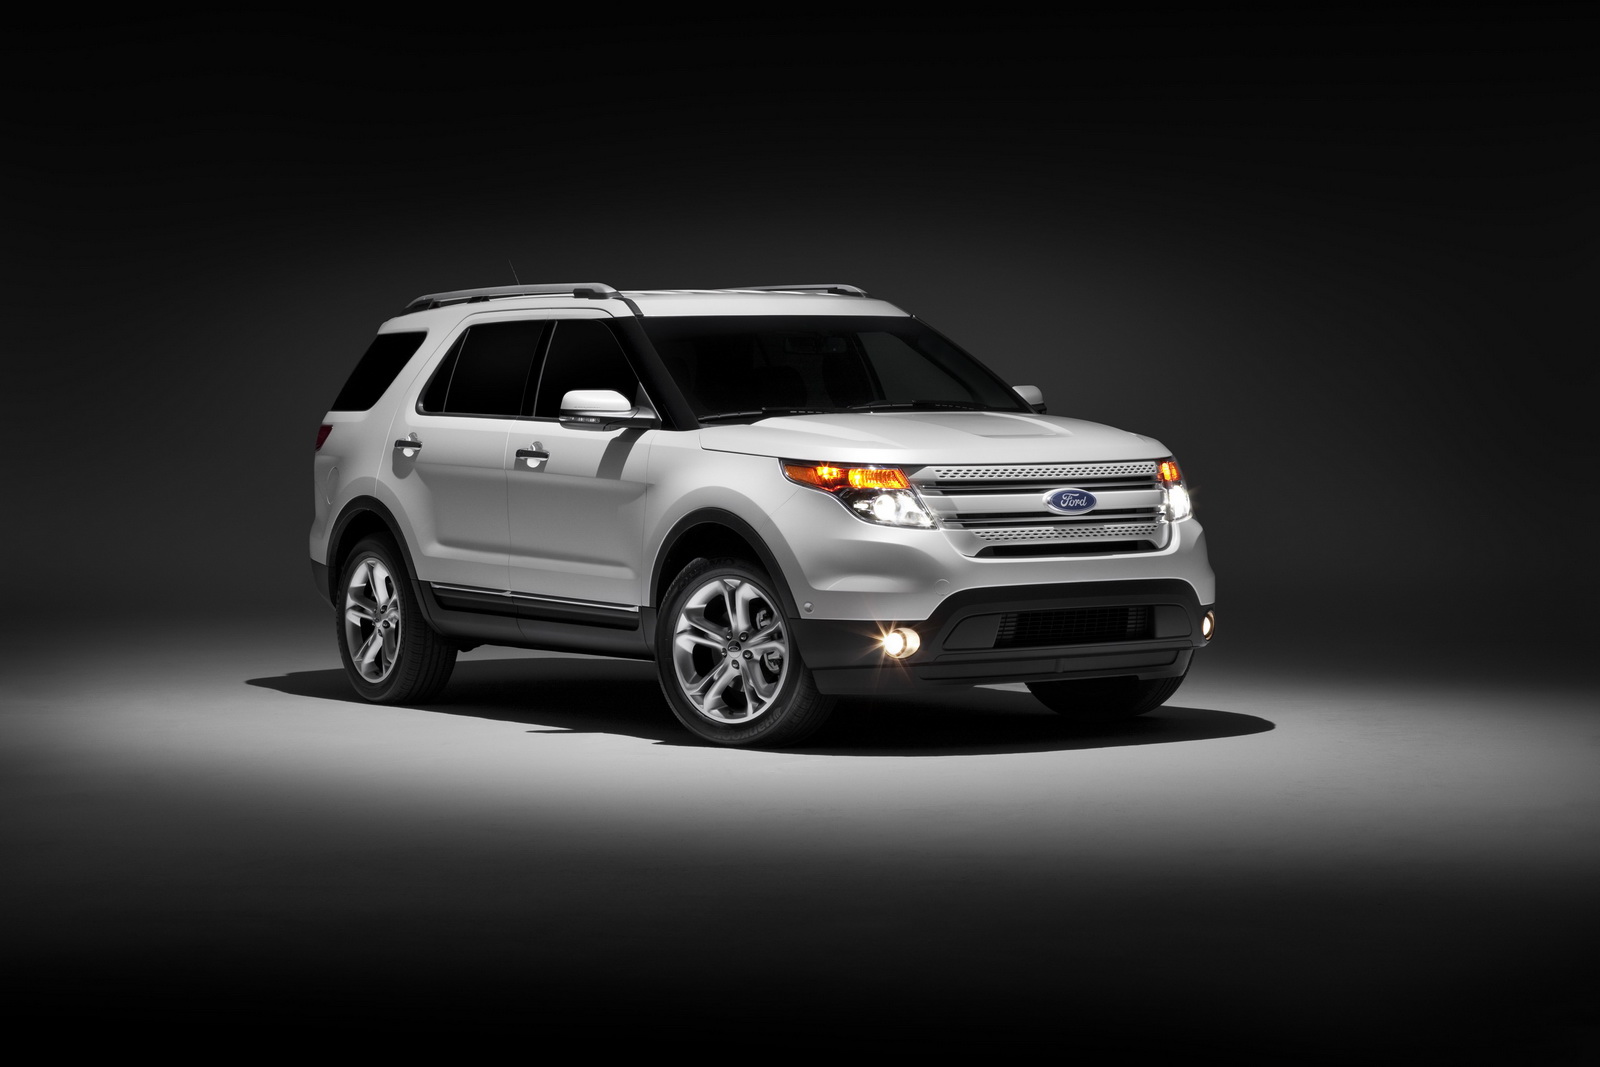 2012 Ford explorer sales figures #1